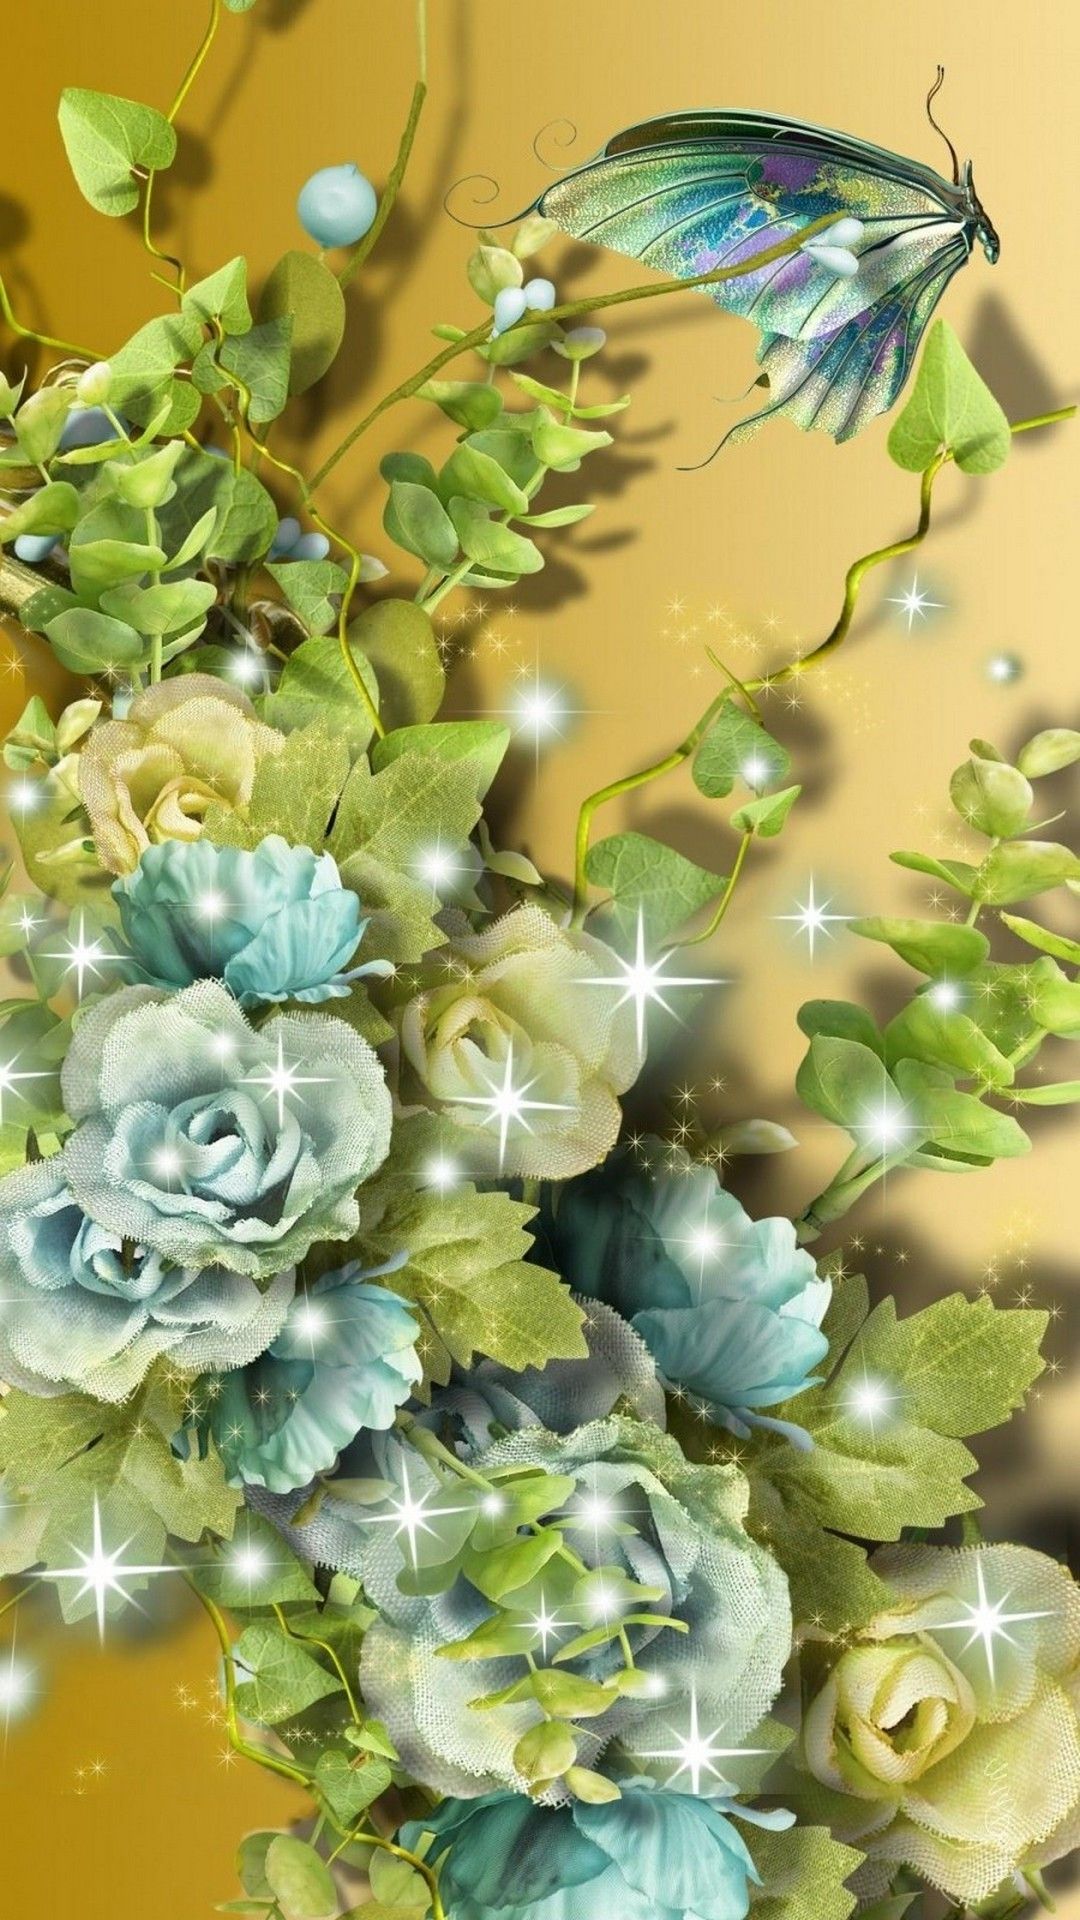 3D Flower Cellphone Wallpaper Cute Wallpaper